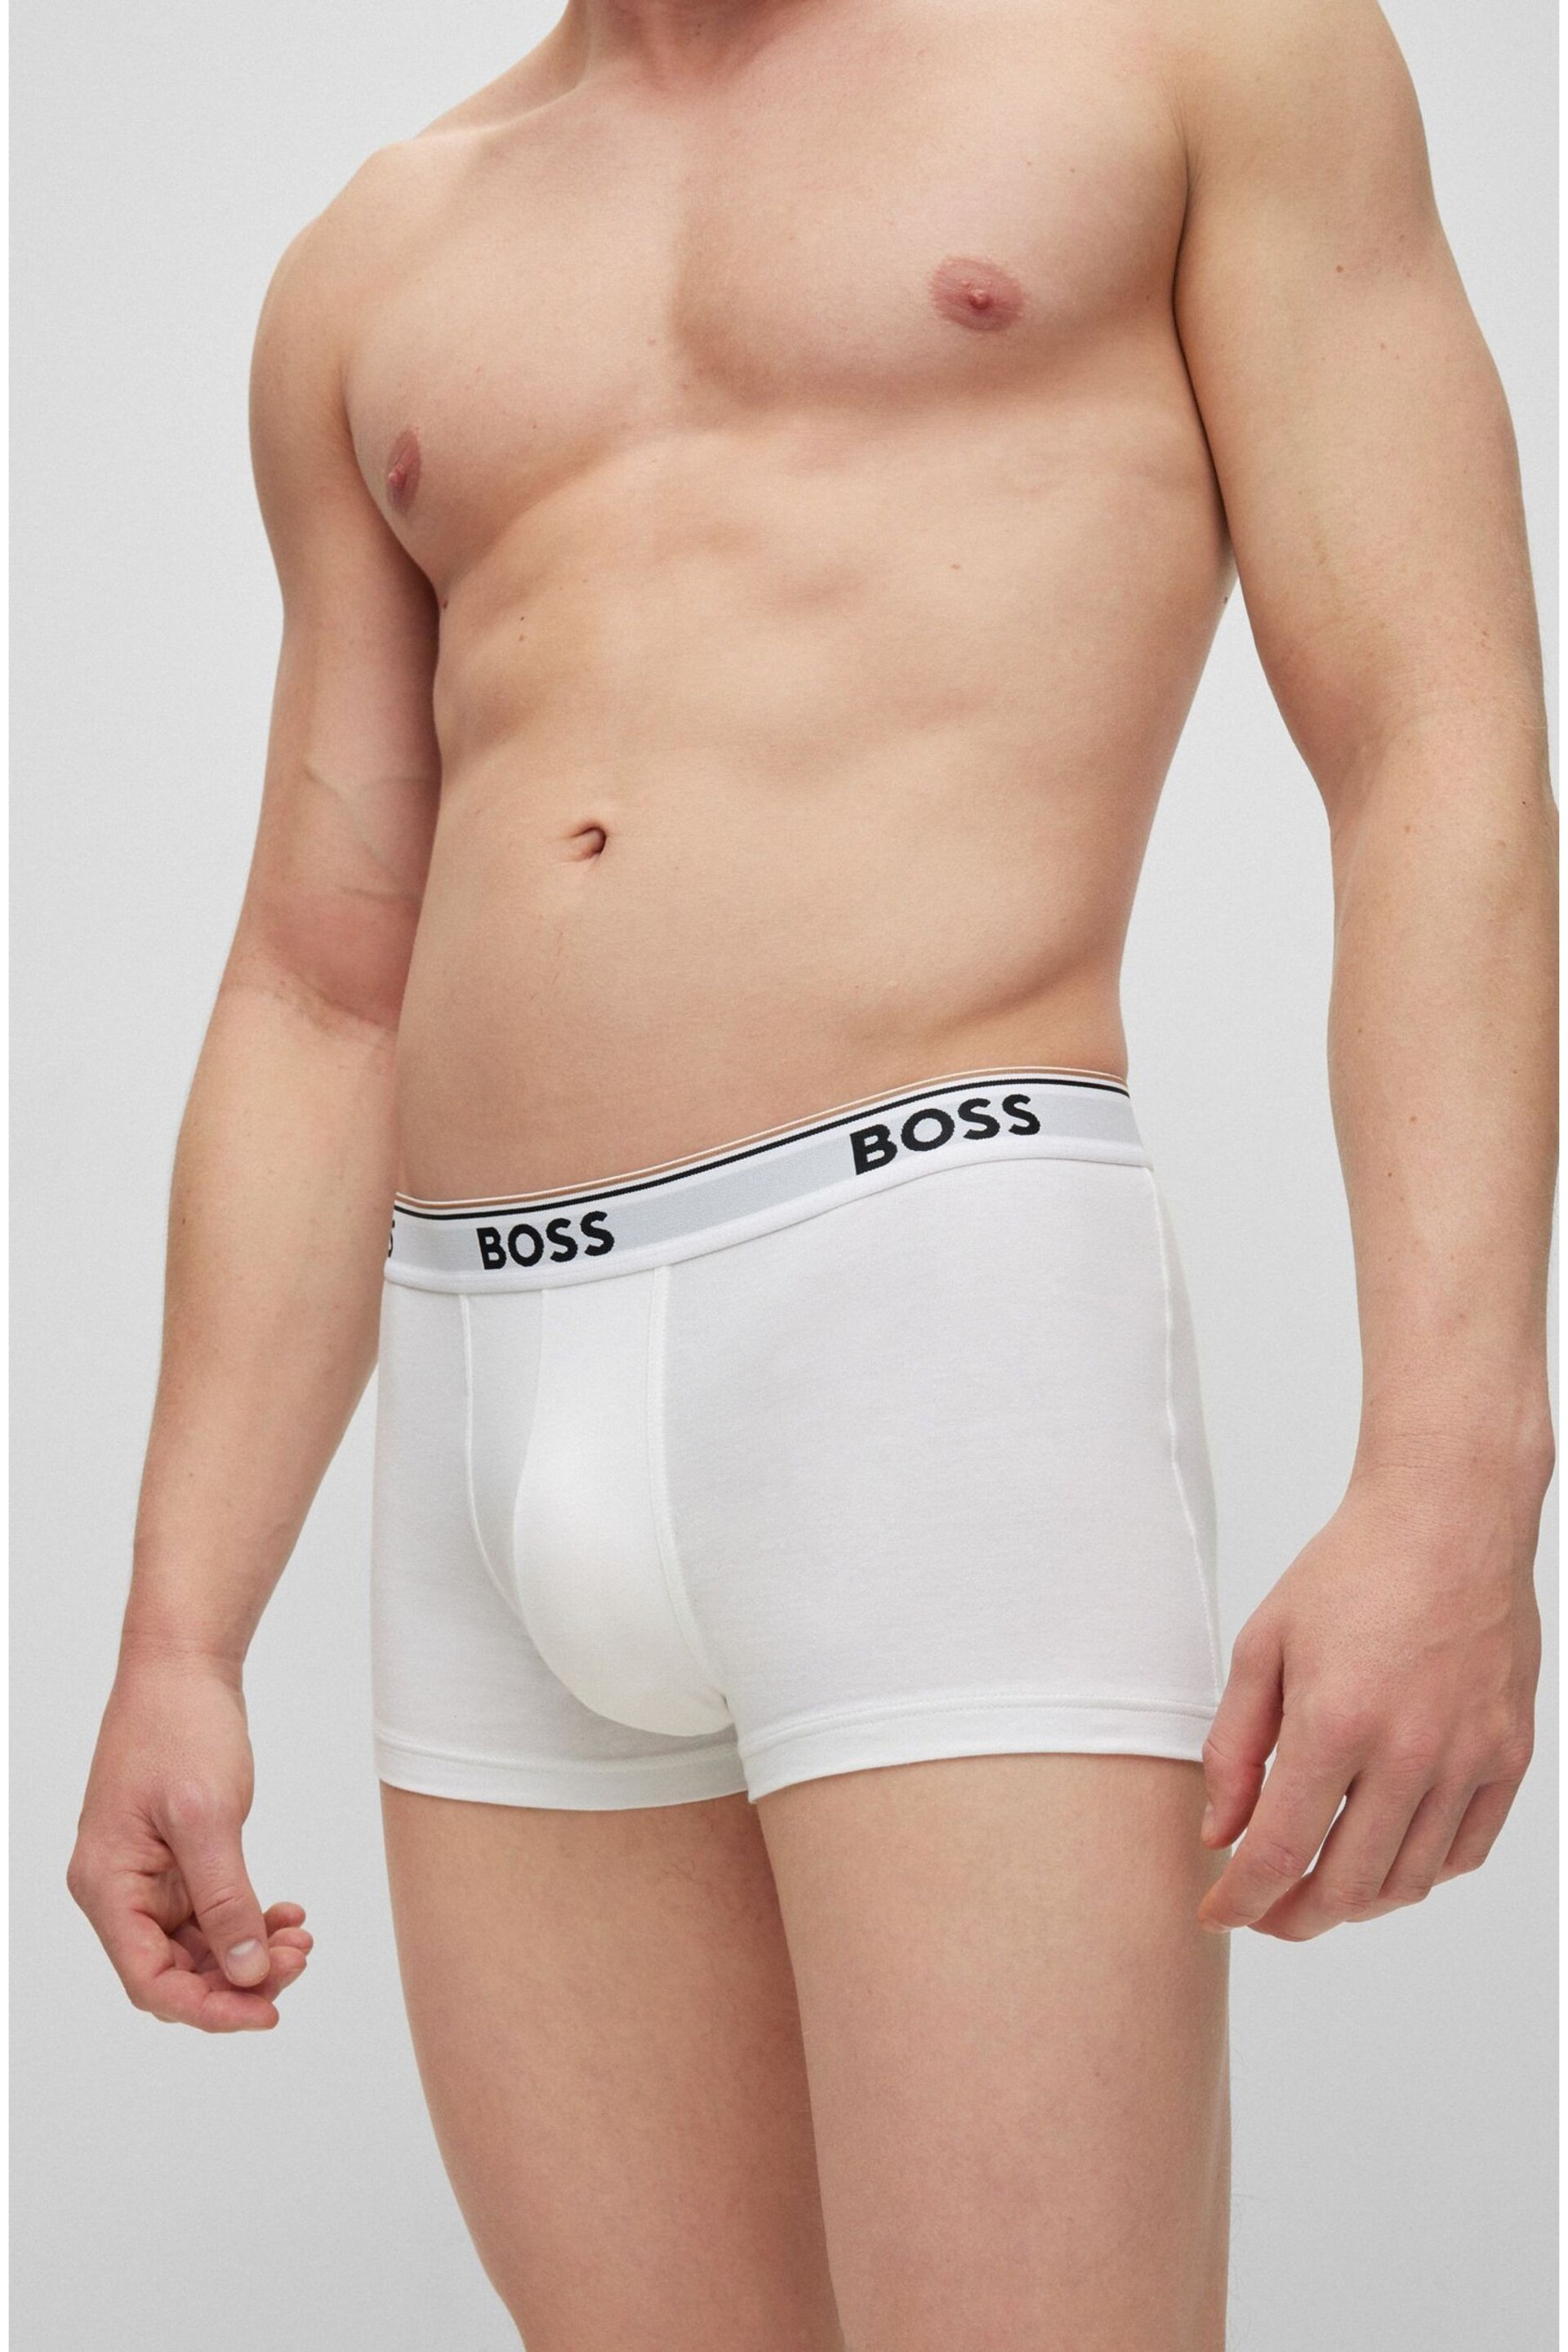 BOSS White Power Boxer 3 Pack - Image 3 of 4